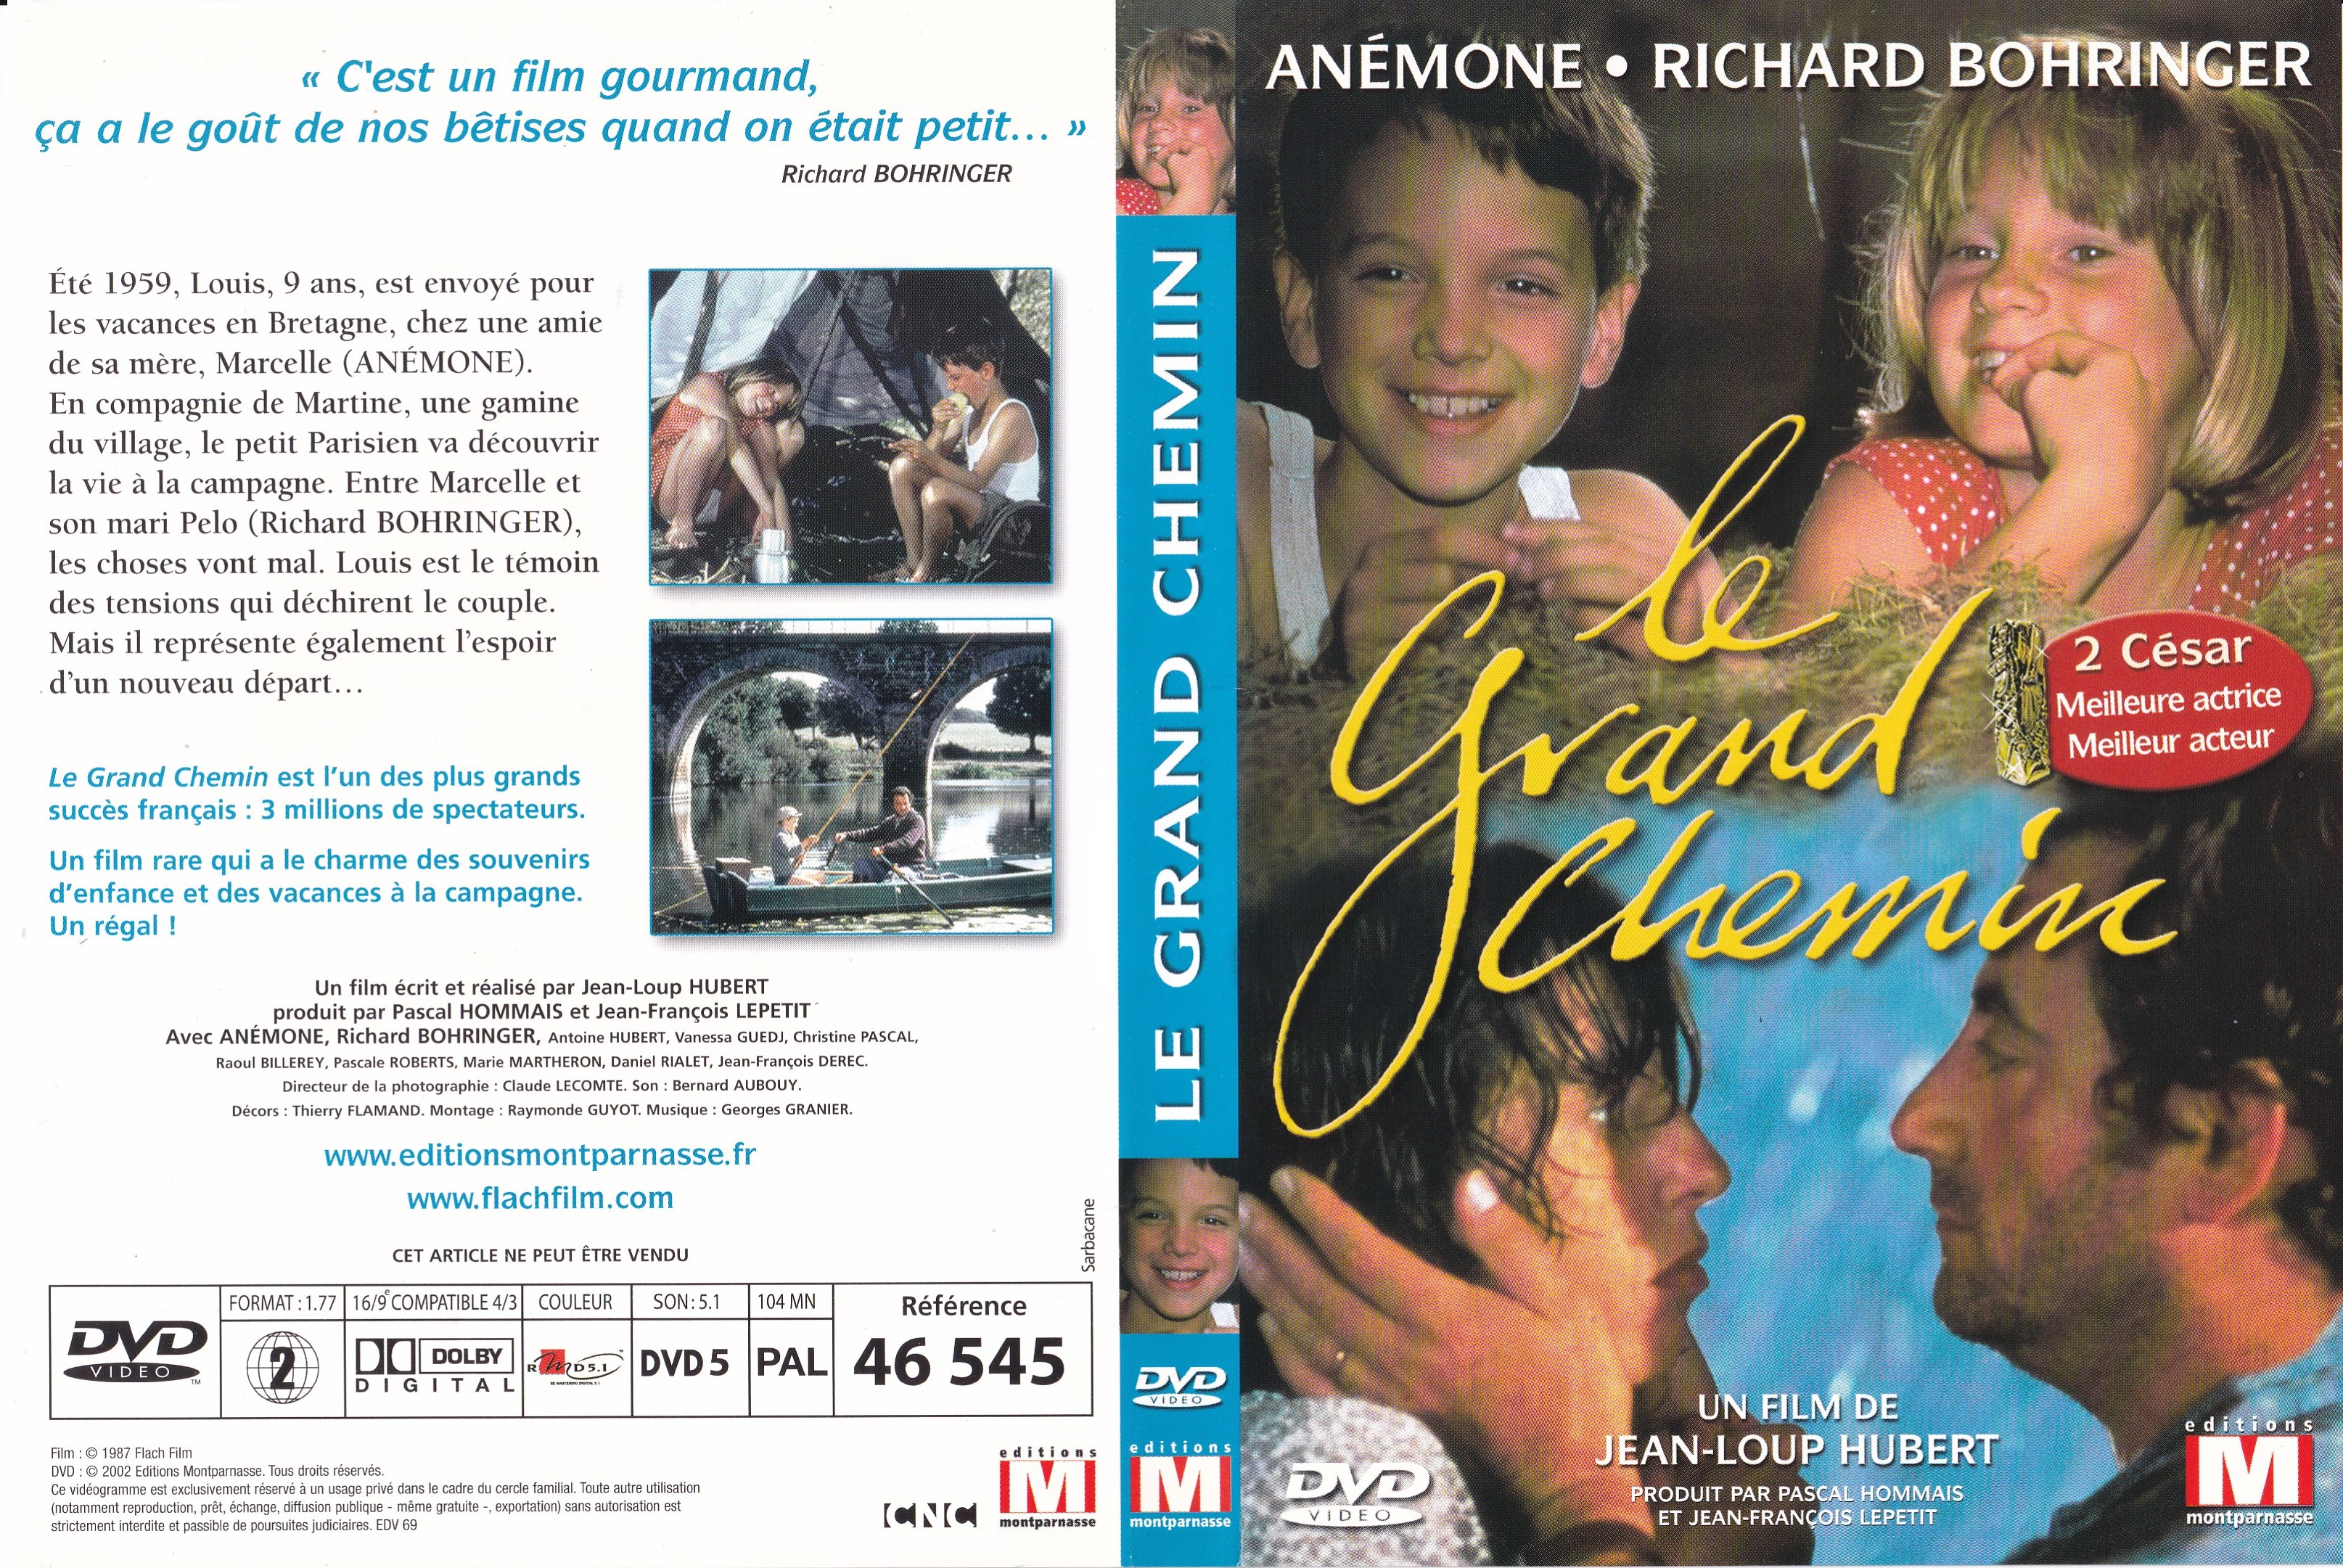 Jaquette DVD Le grand chemin v2